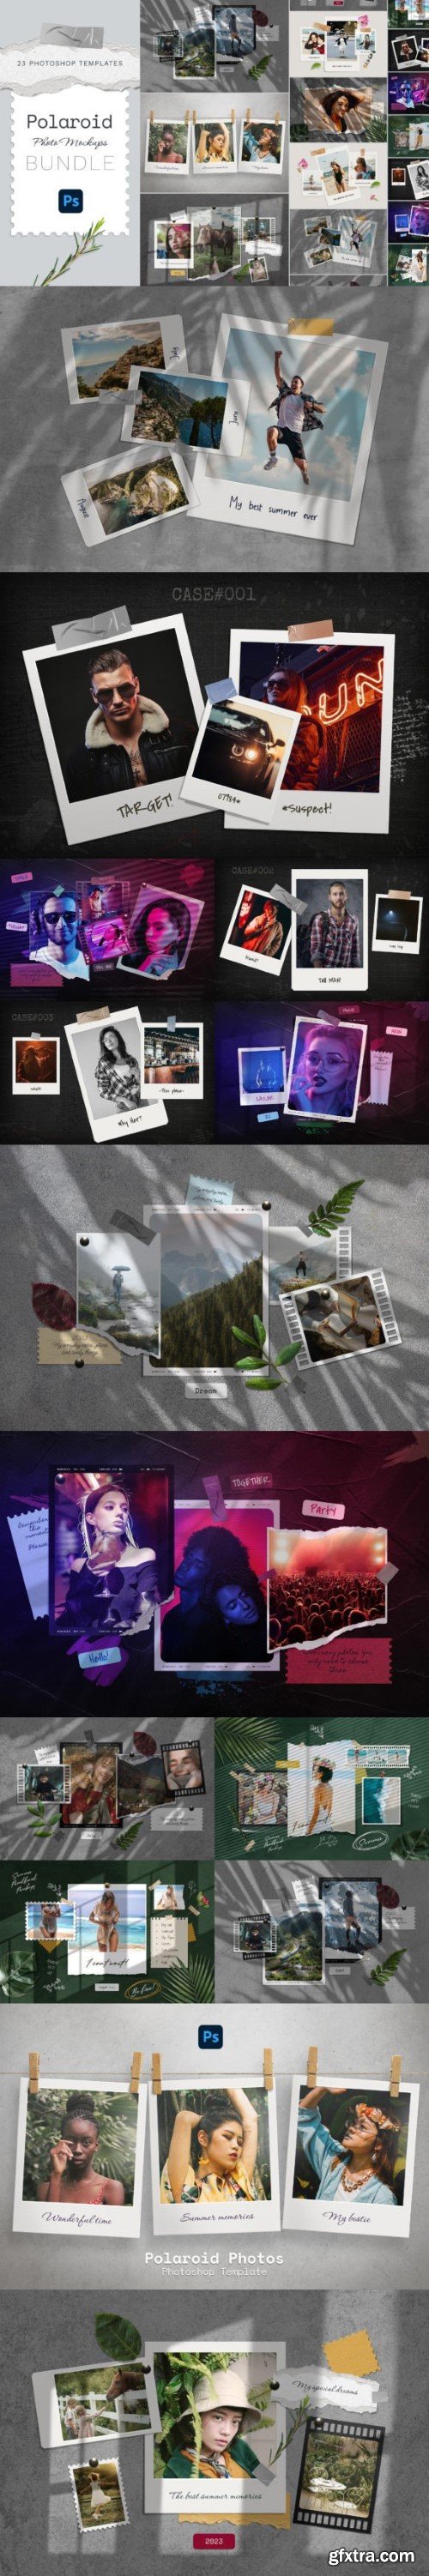 Polaroid Photo Templates Big Set